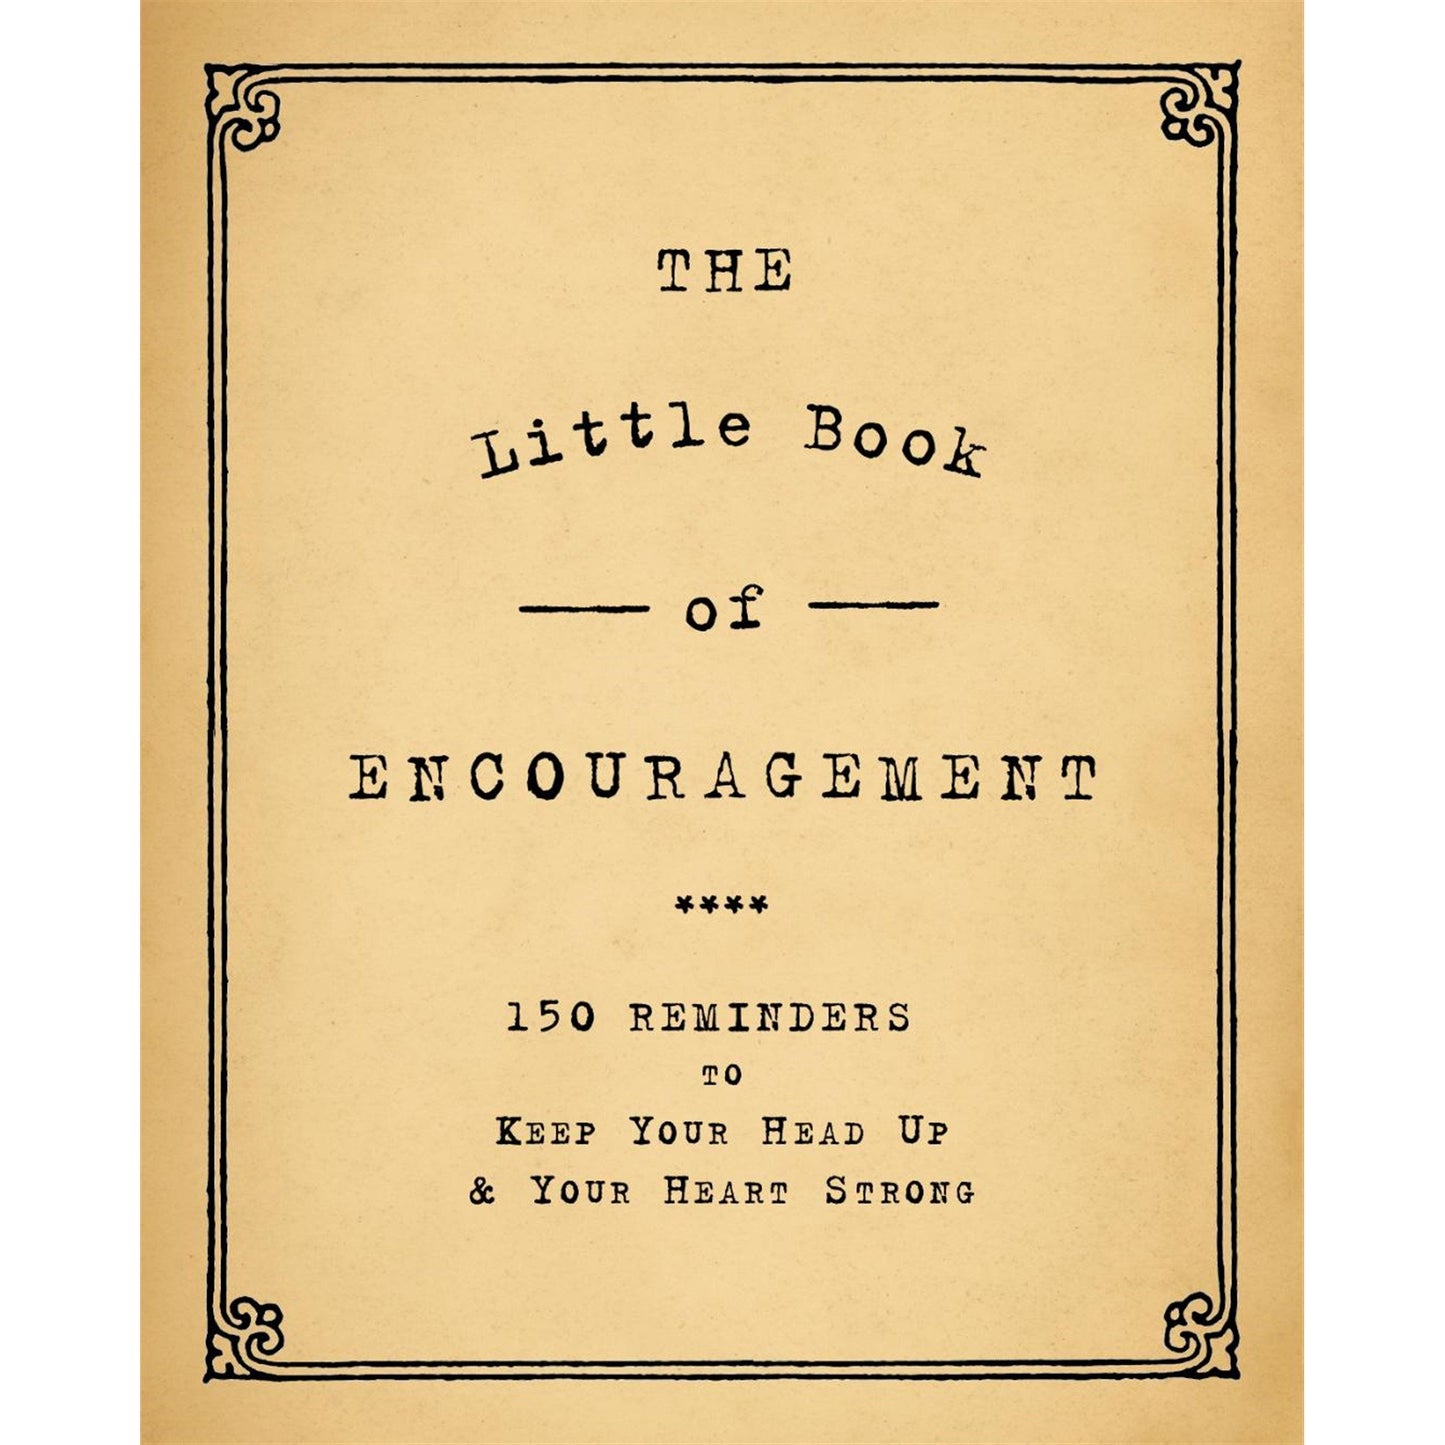 The Little Book of Encouragement - r. h. ballard shop